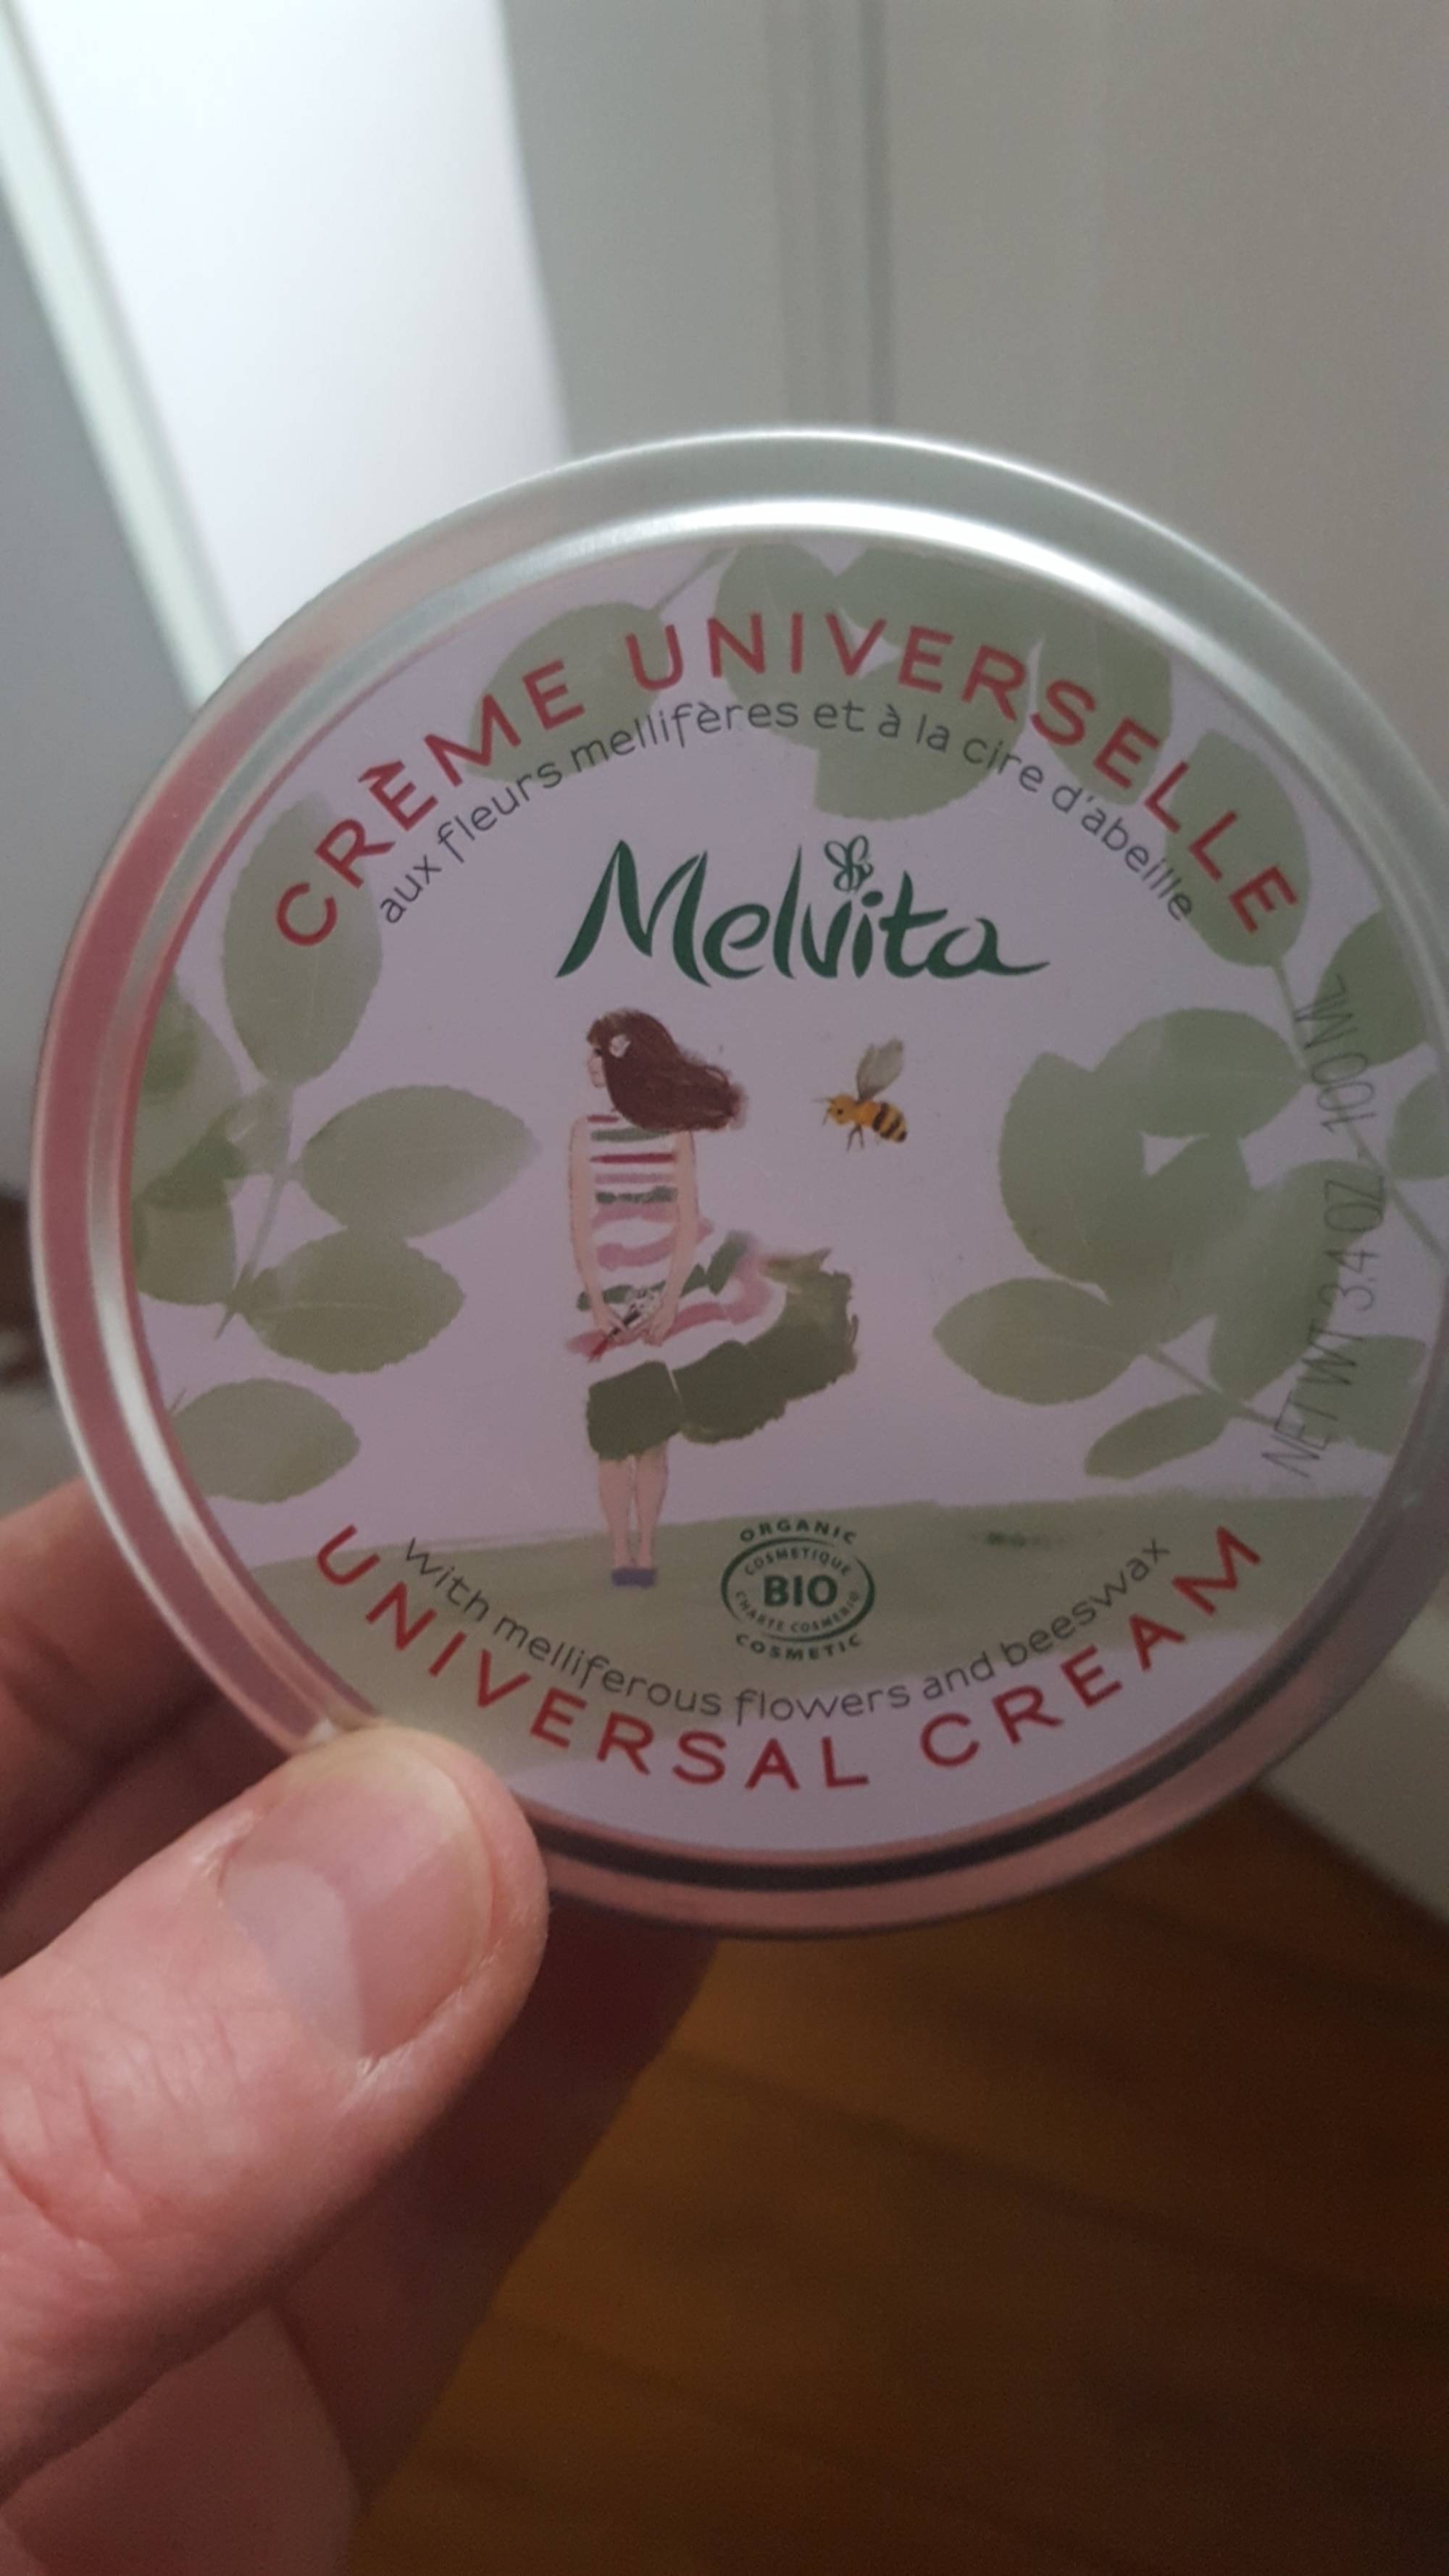 MELVITA - Crème universelle aux fleurs mellifères et à la cire d'abeille